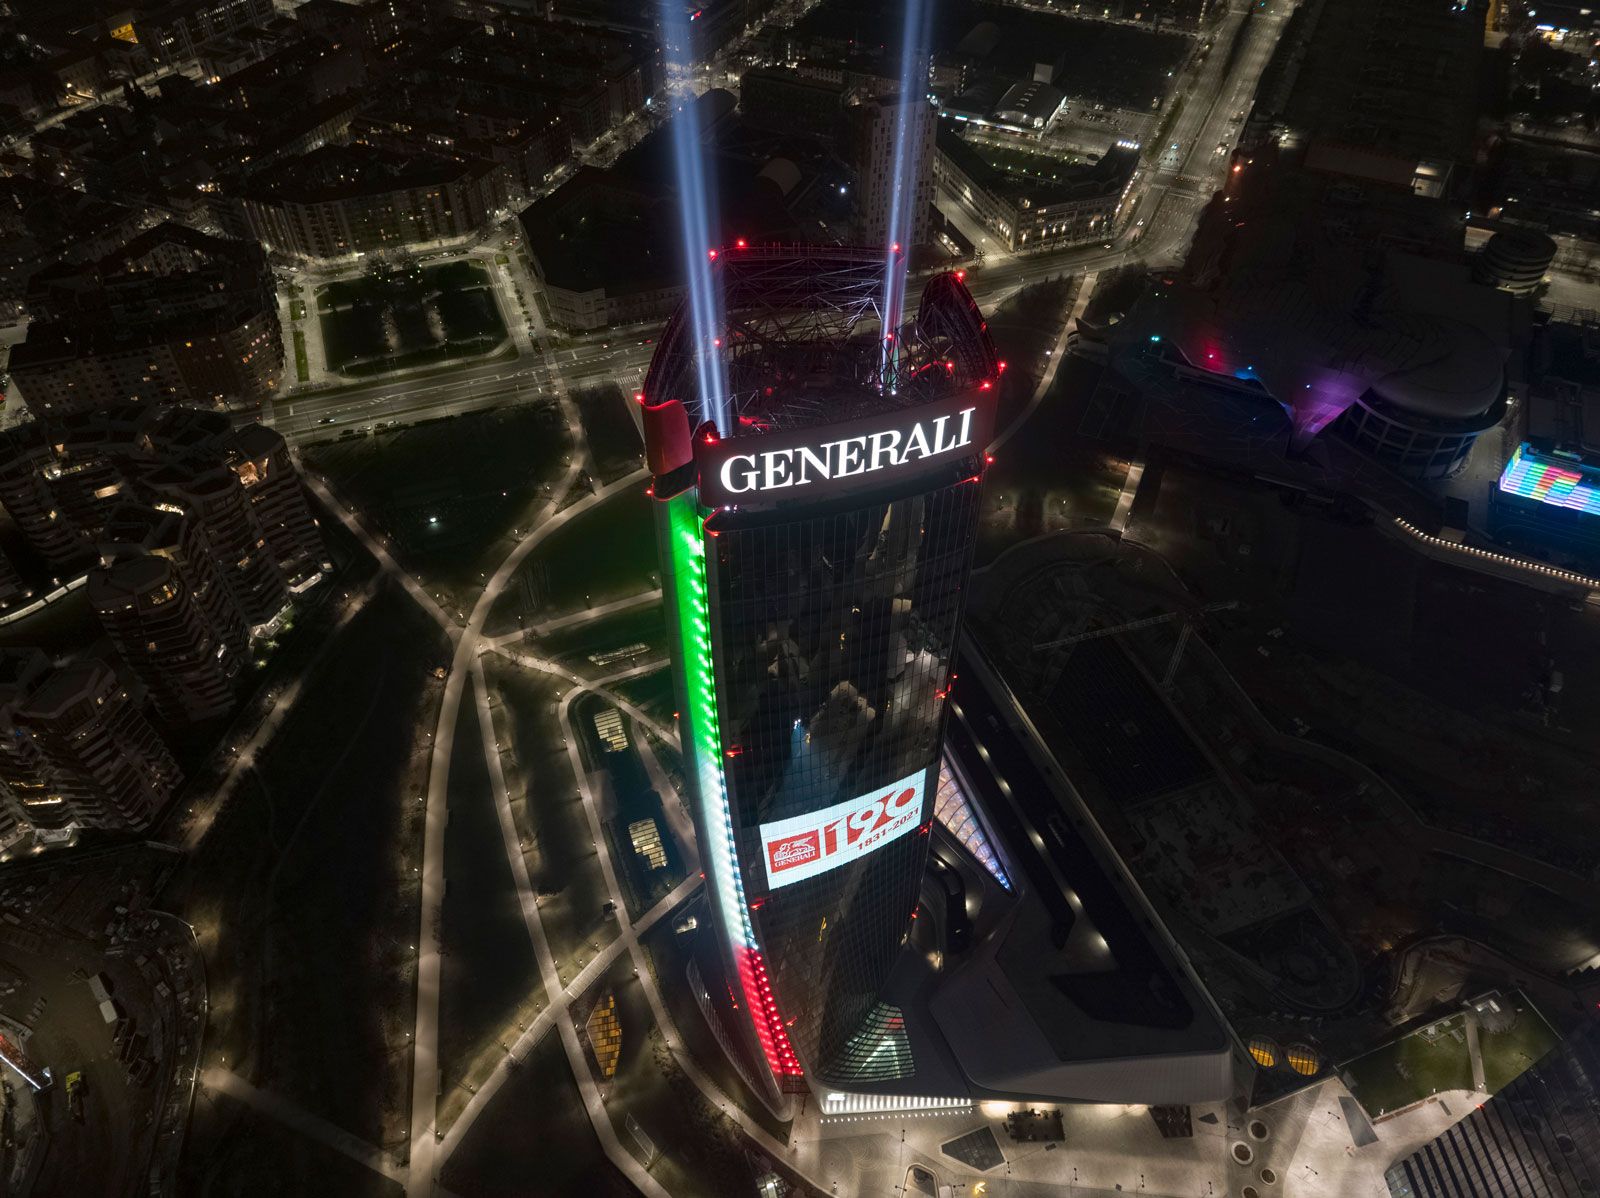 Immagini - La Torre Generali si illumina per i 190 anni della Compagnia